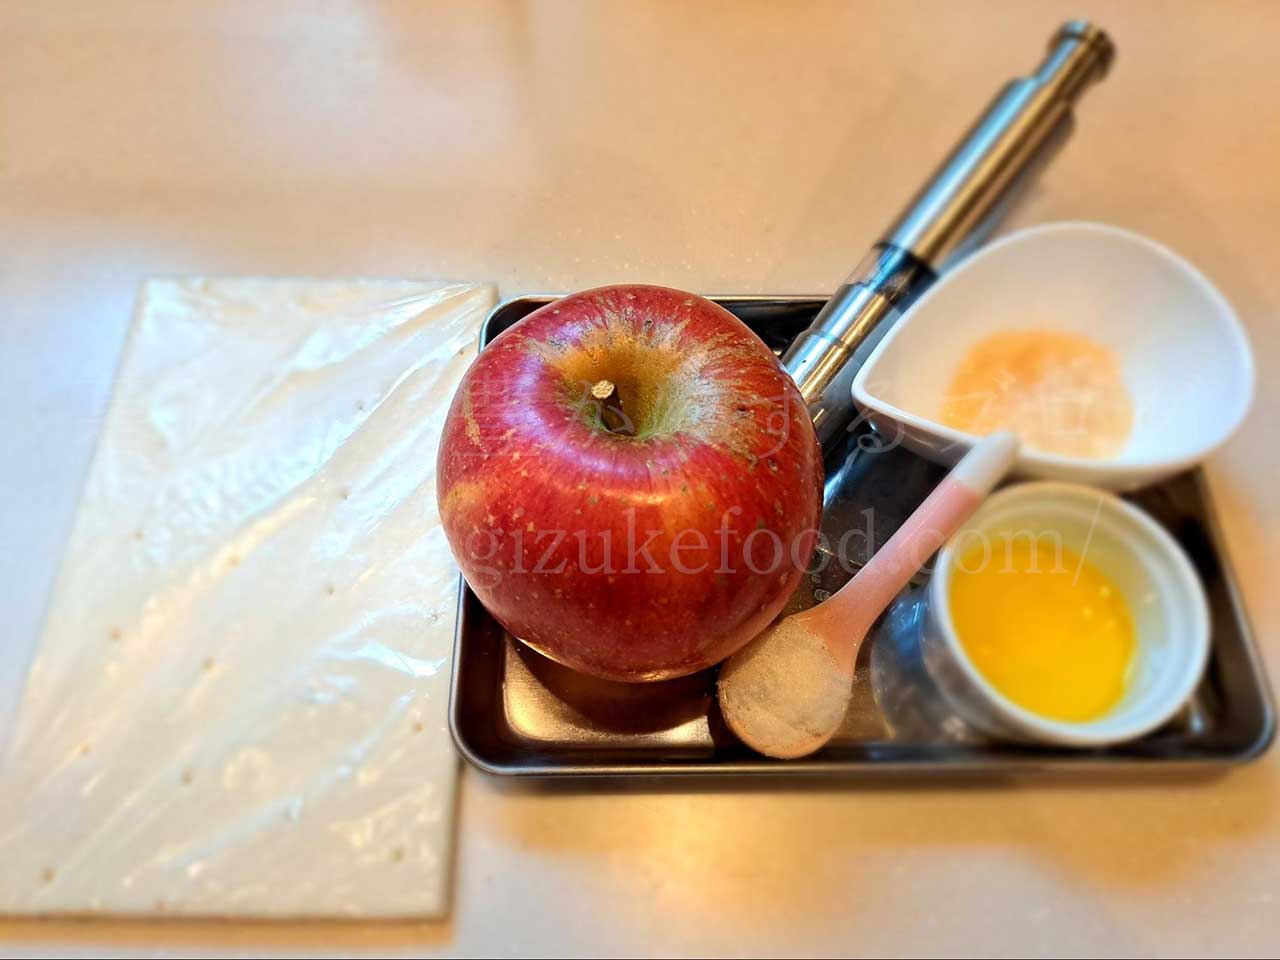 発酵食品レシピ「りんごと酒粕のパイ包み焼き」